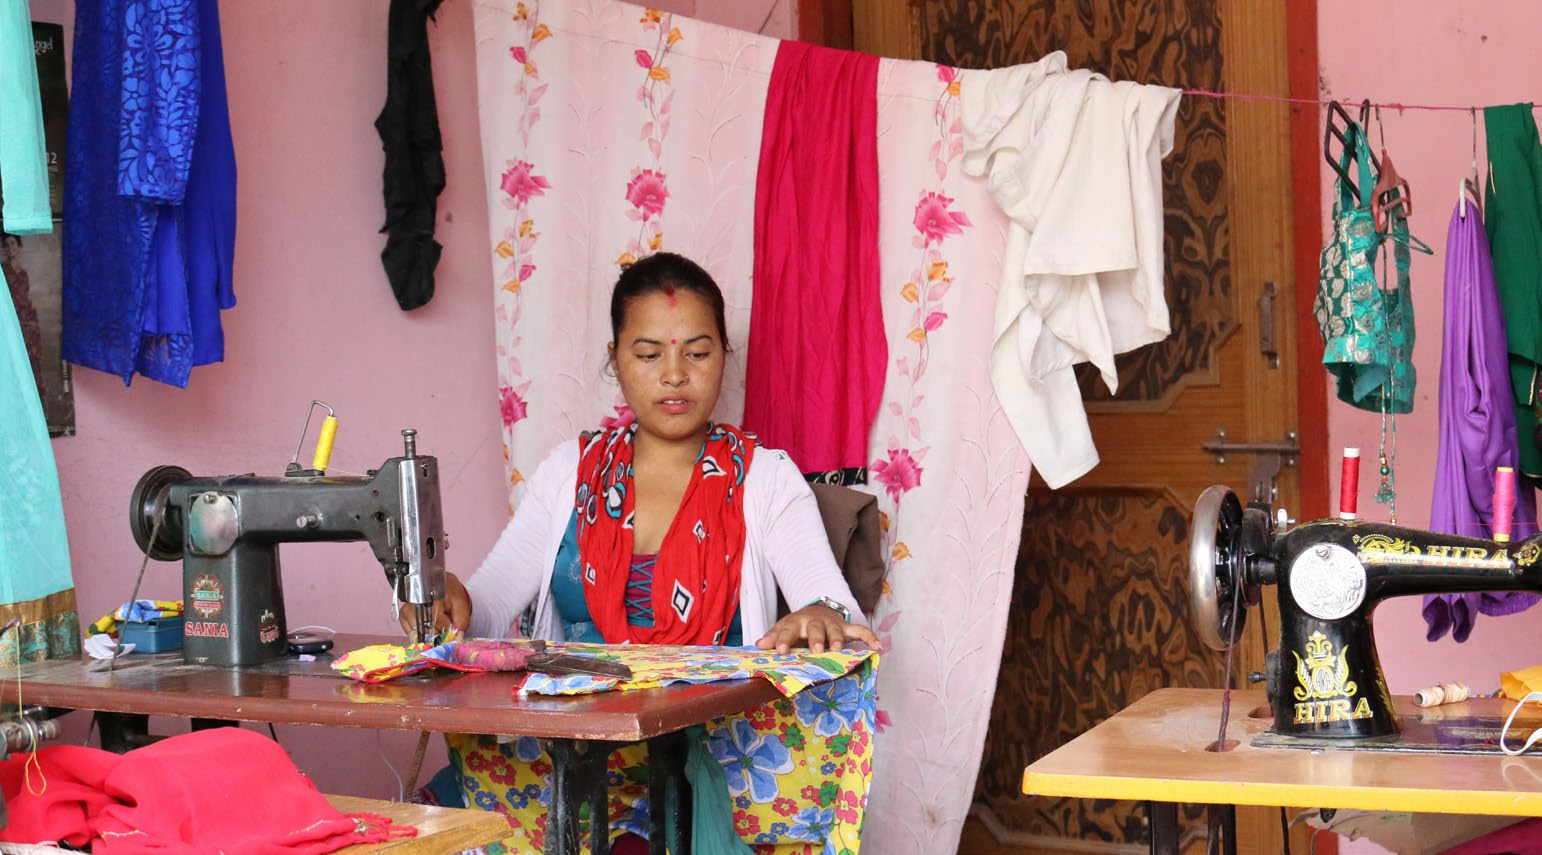 6 ostvision WIR BAUEN AUF durch Bildung und Gewerbeförderung MENSCHEN ENTDECKEN IHR POTENZIAL NEPAL Ashis Khadka Kathmandu Armut und Hoffnungslosigkeit sind weit verbreitet in Nepal.